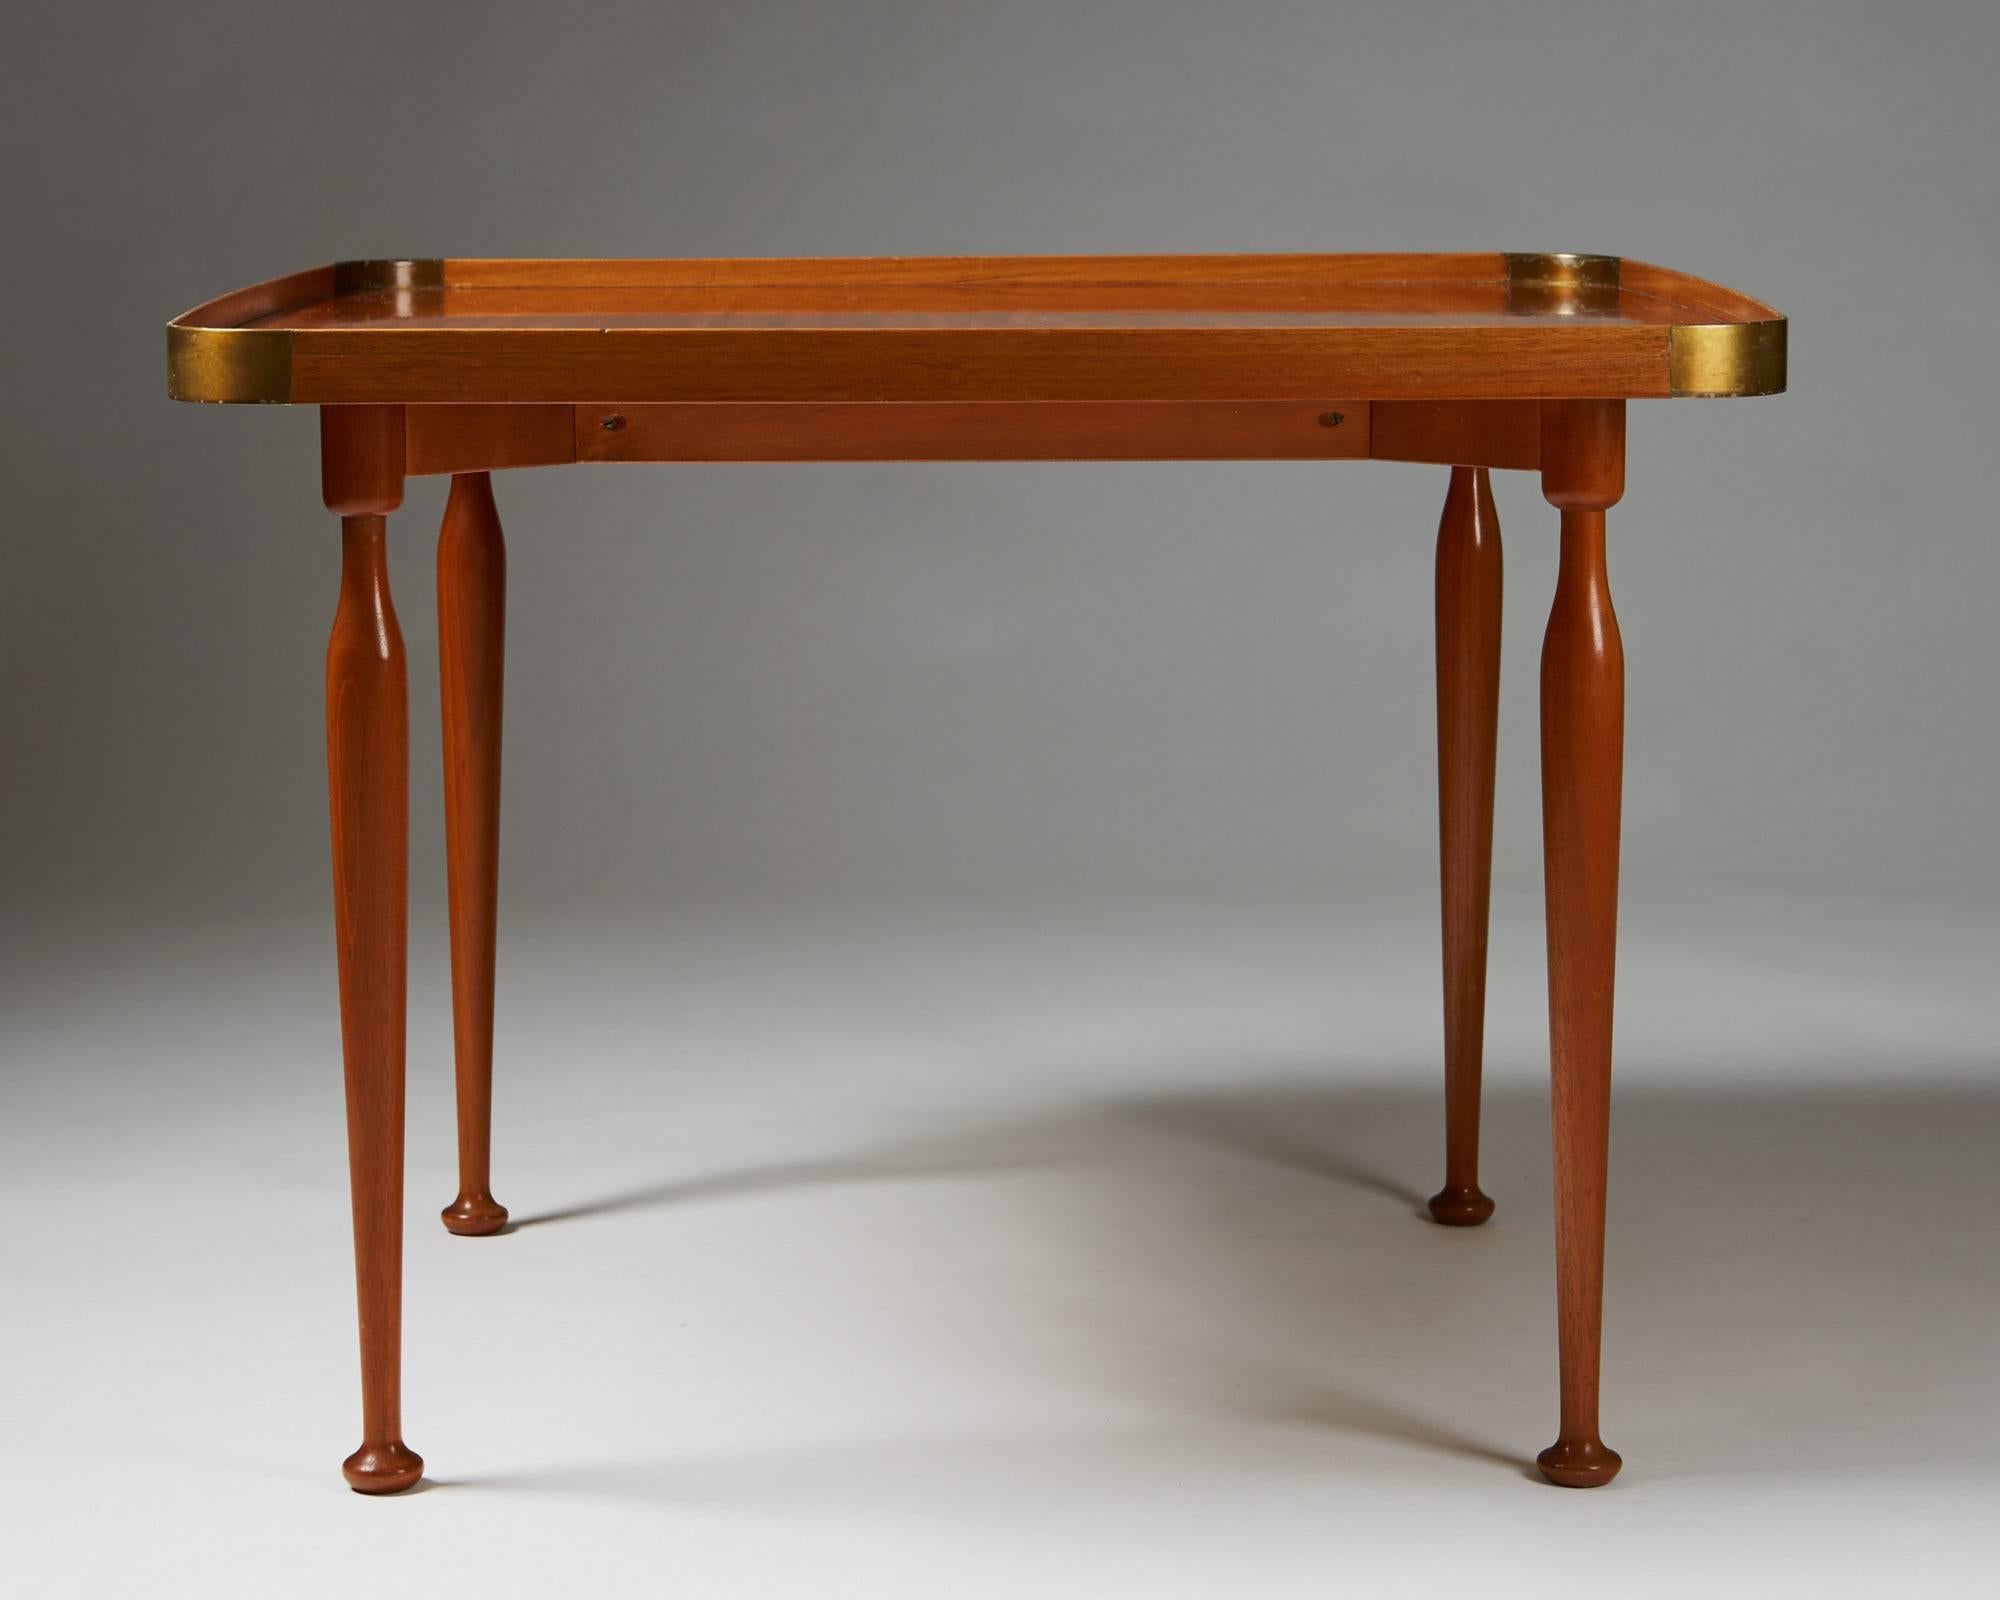 Scandinavian Modern Occasional Table Model 1074 Designed by Josef Frank for Svenskt Tenn